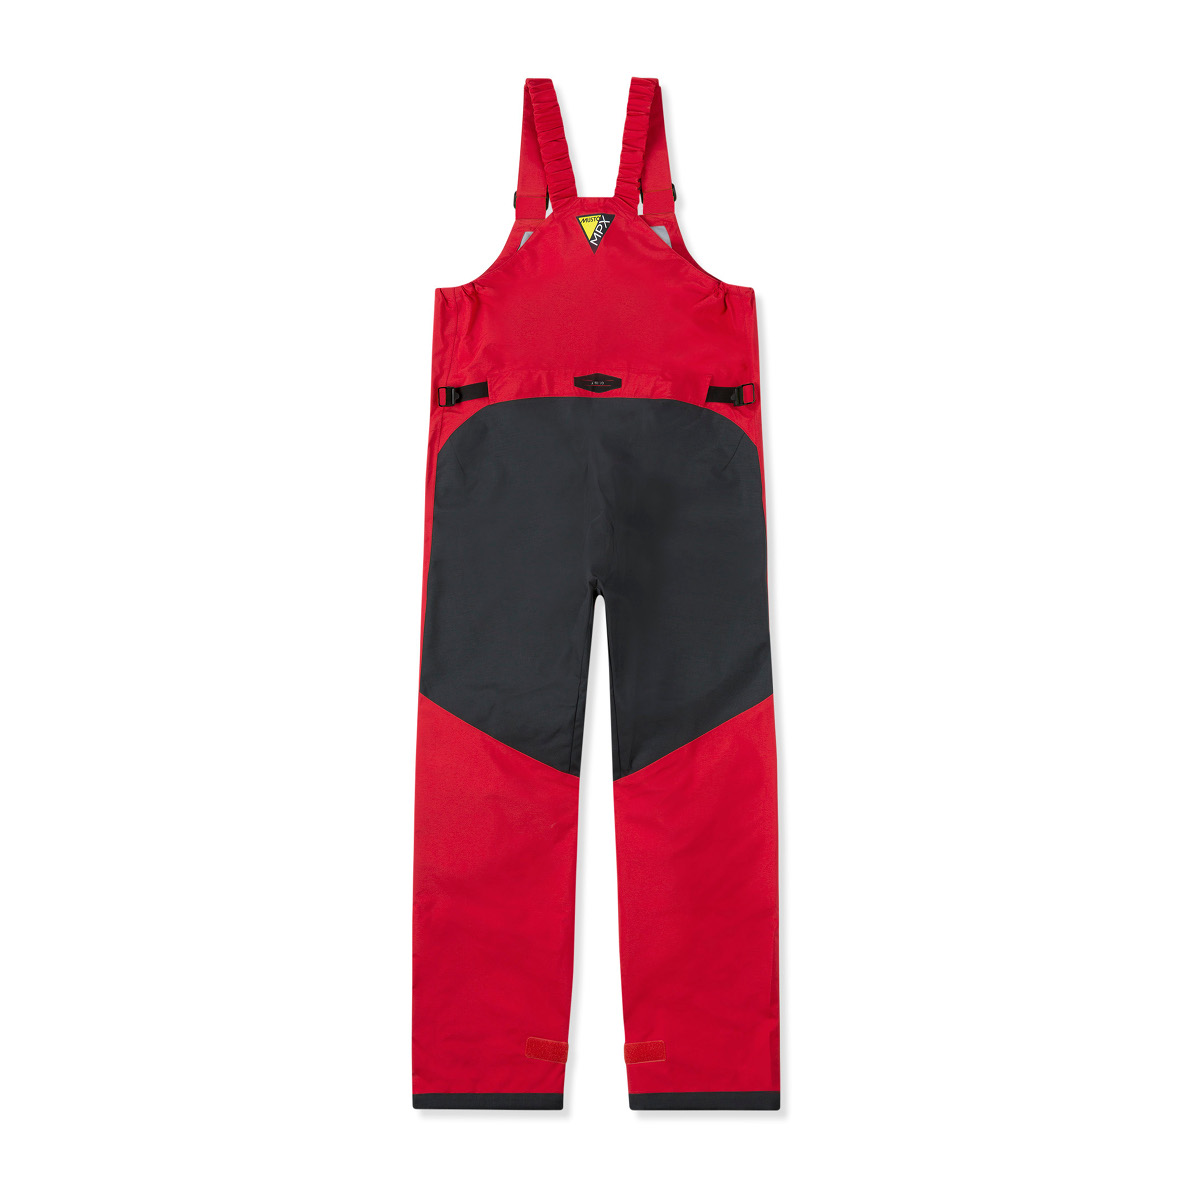 Musto MPX Gore-Tex Pro Offshore pantalon de voile homme rouge, taille XL